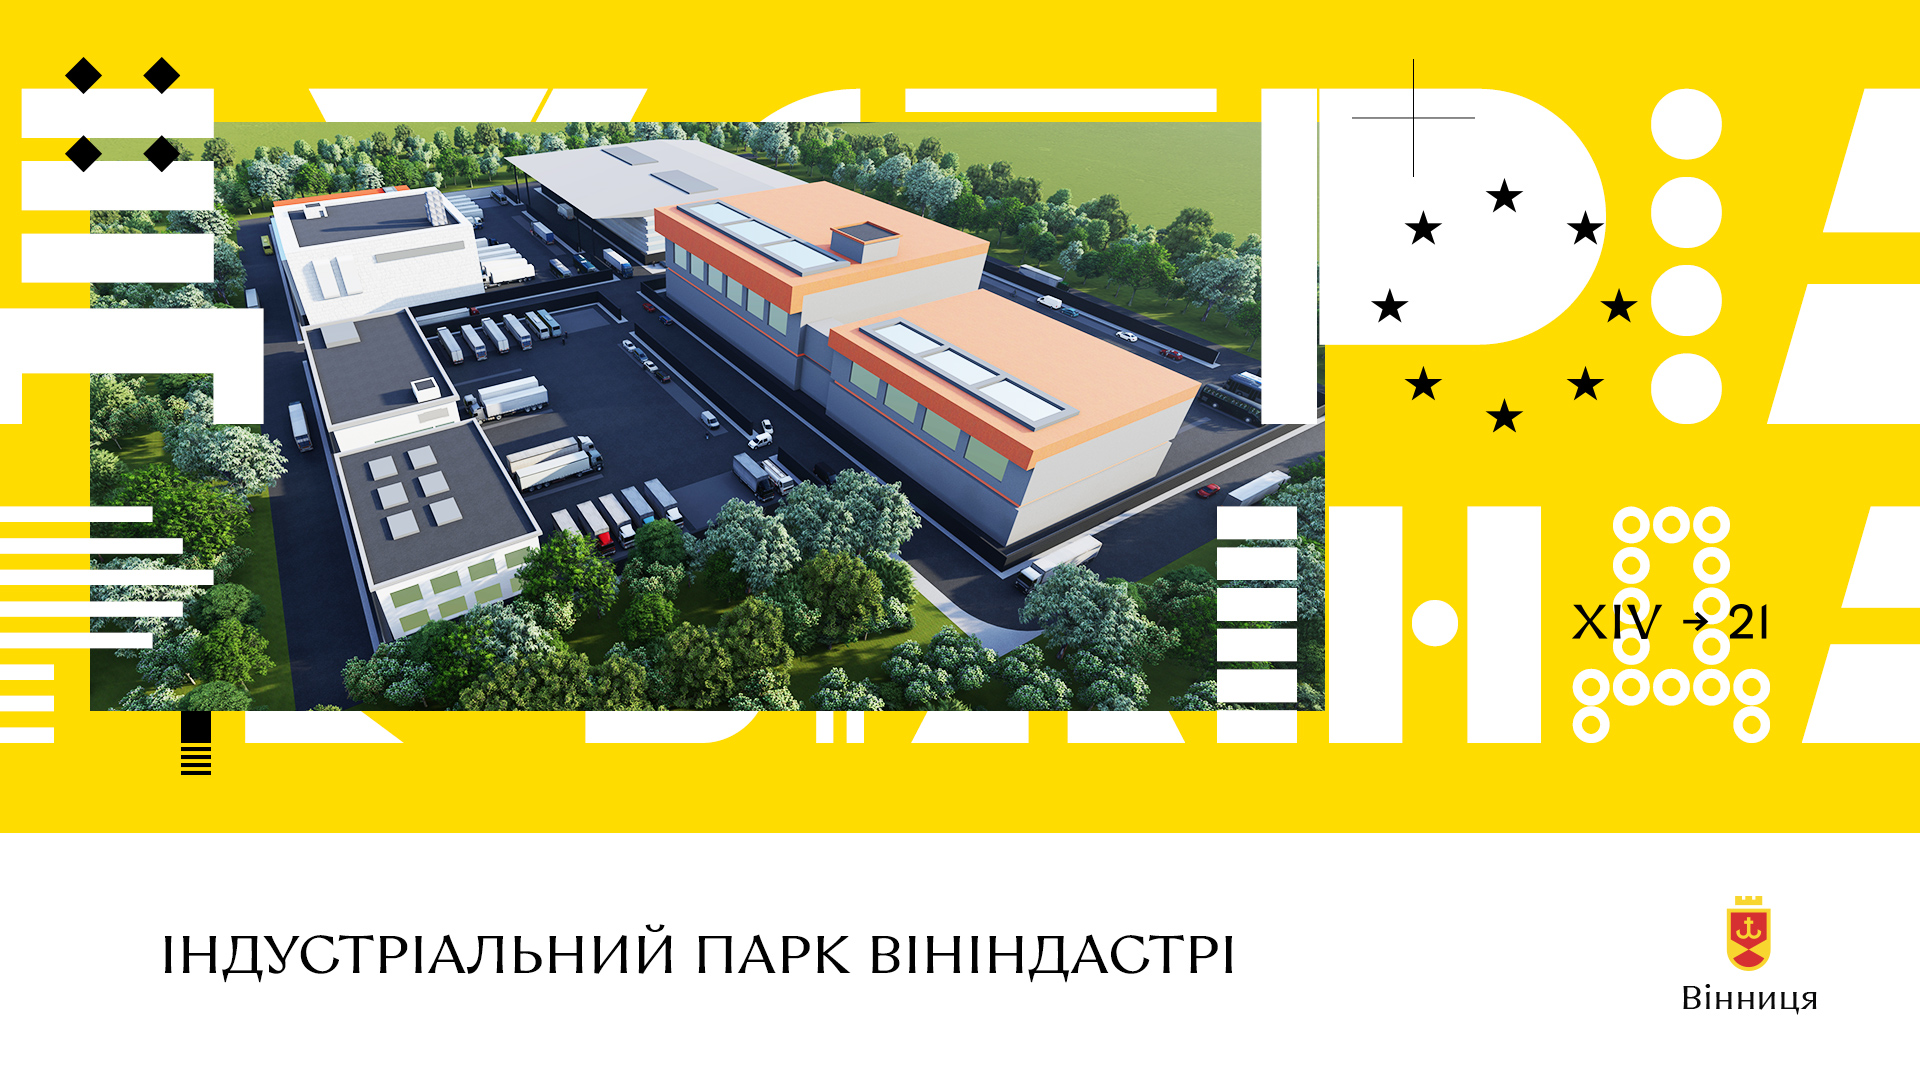 ВінІндастрі: у Вінниці підписали договір з керуючою компанією четвертого індустріального парку